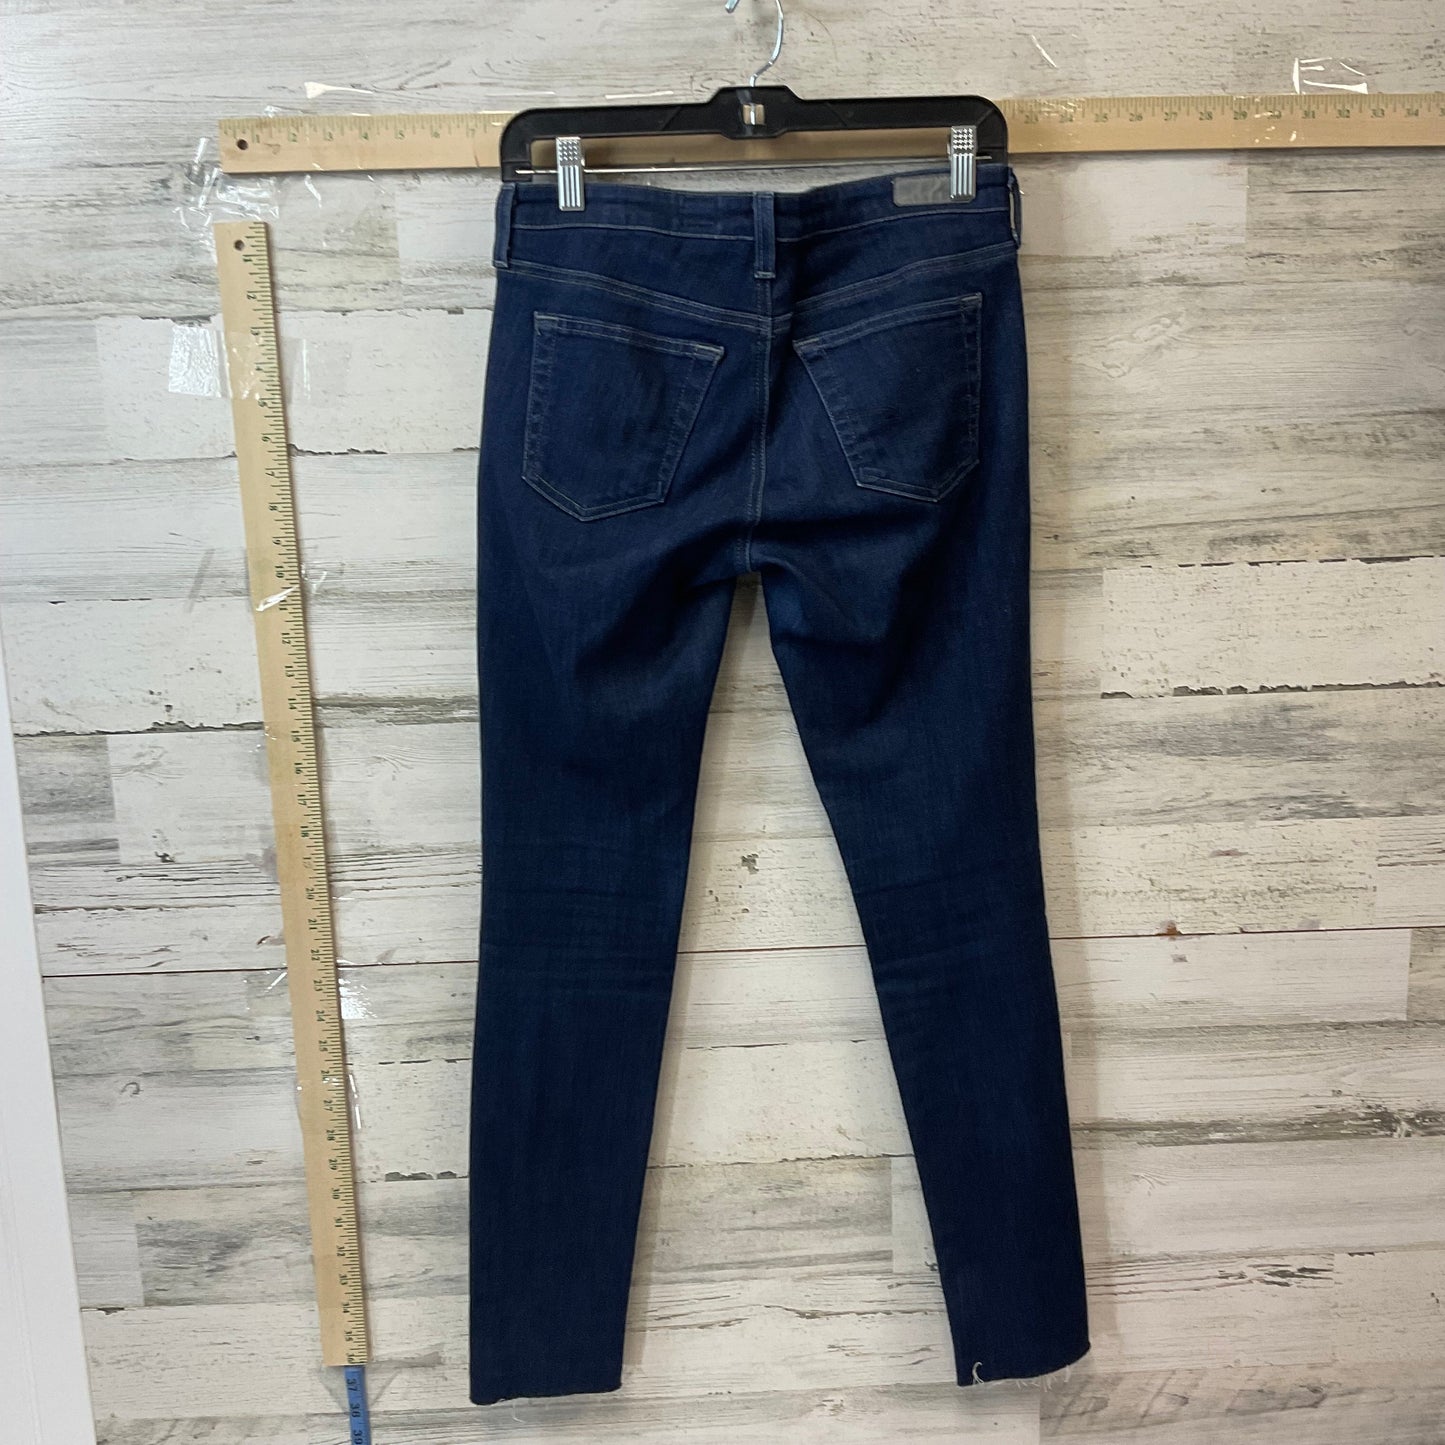 Jeans Skinny By Adriano Goldschmied  Size: 6